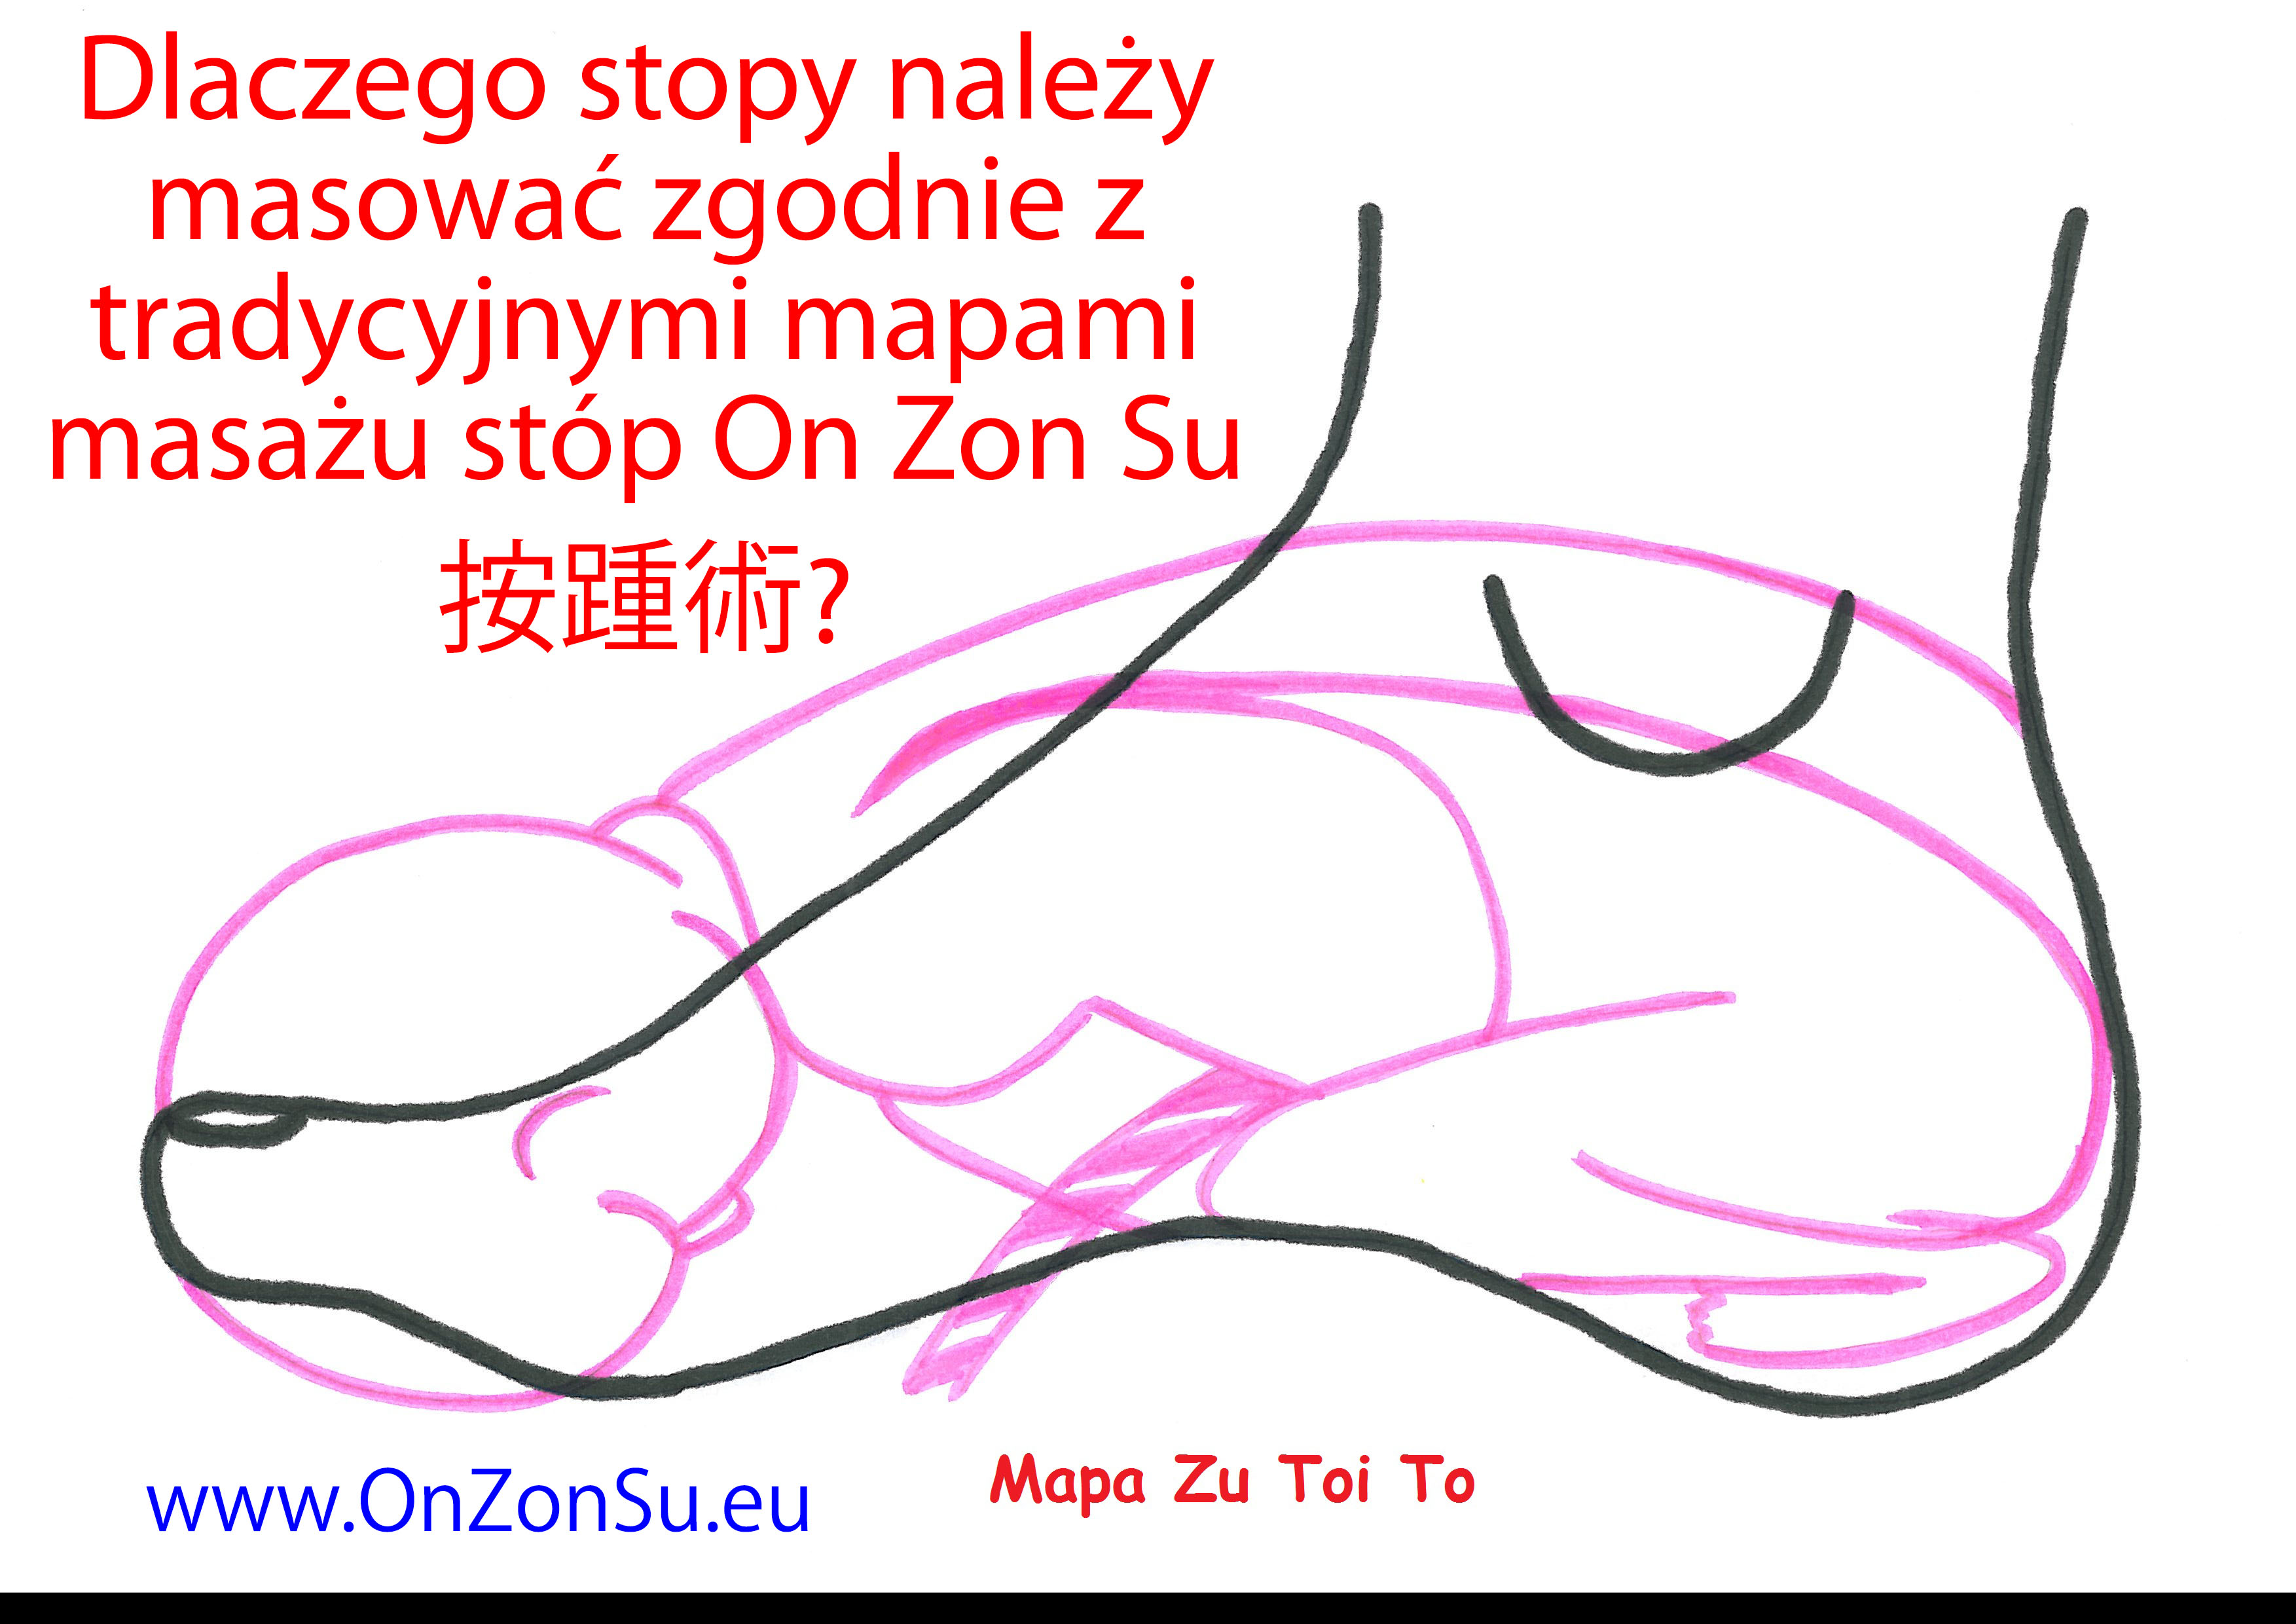 Kurs masażu stóp On Zon Su, Szkolenia refleksologii stóp - Dlaczego stopy należy masować zgodnie z  tradycyjnymi mapami masażu stóp On Zon Su? Mapa_Zu_Toi_To_MEM.jpg